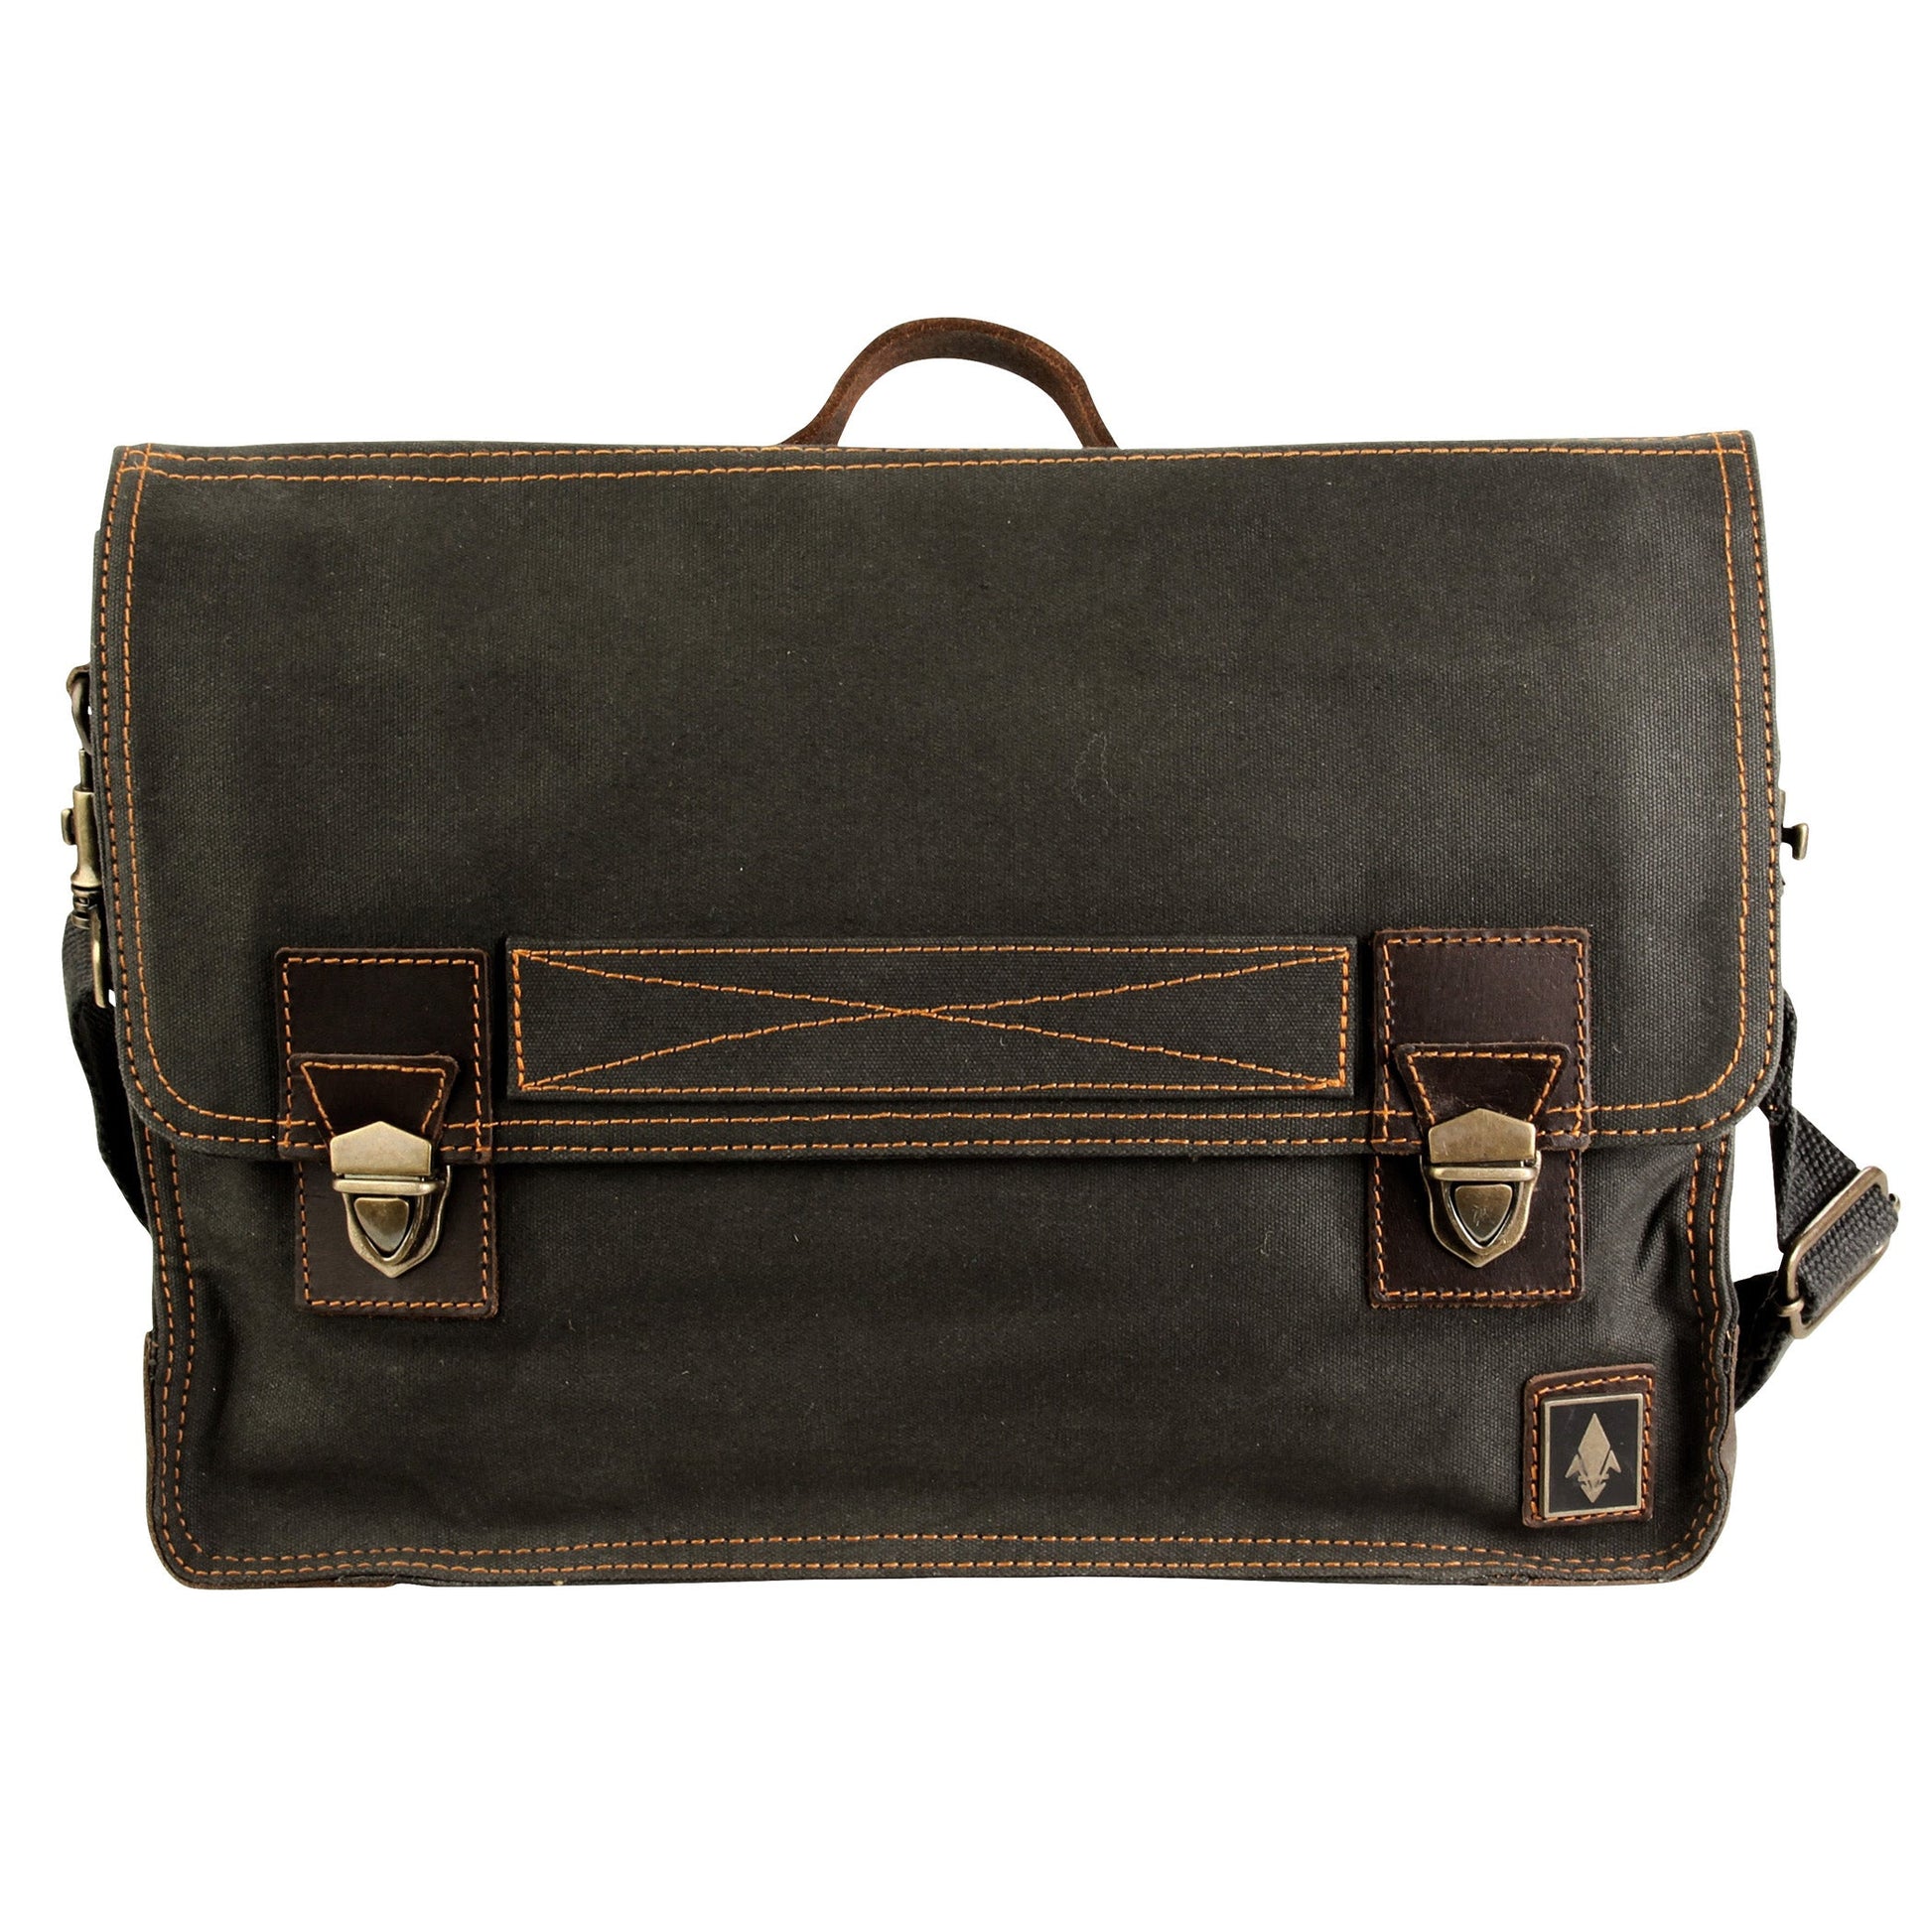 Work Bag - Messenger Bag - Canvas - Leather Handle for Men